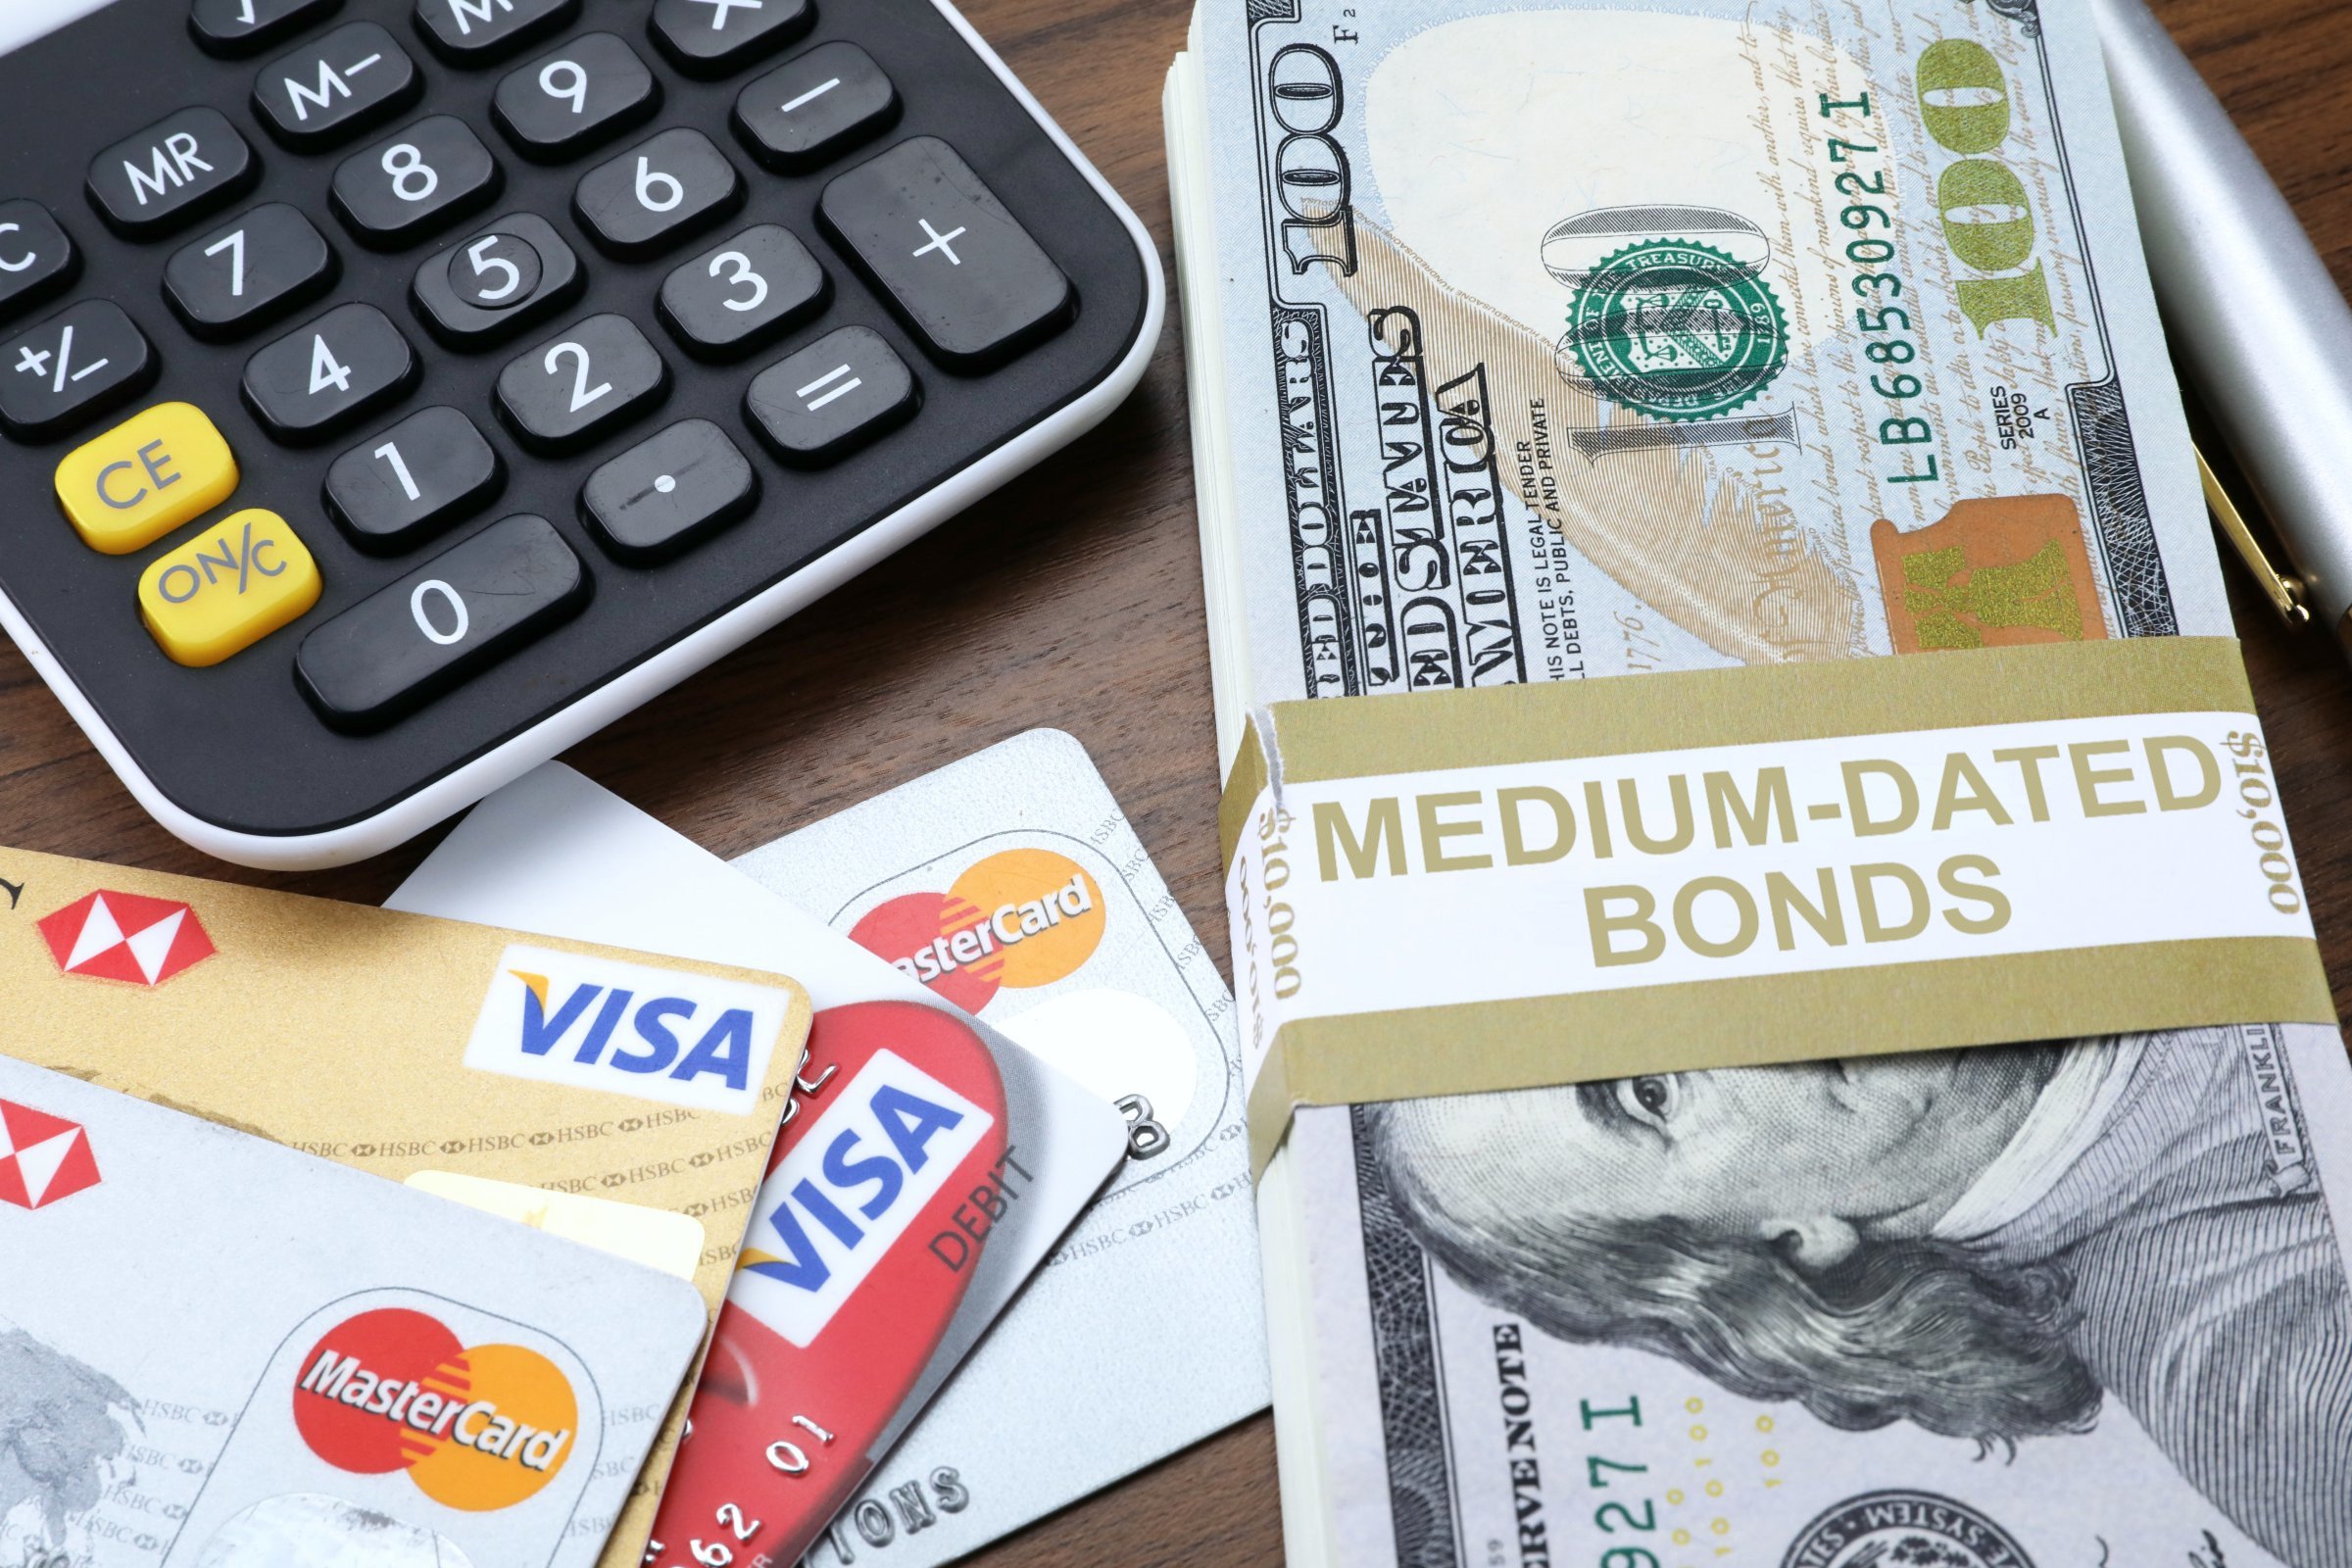 medium dated bonds